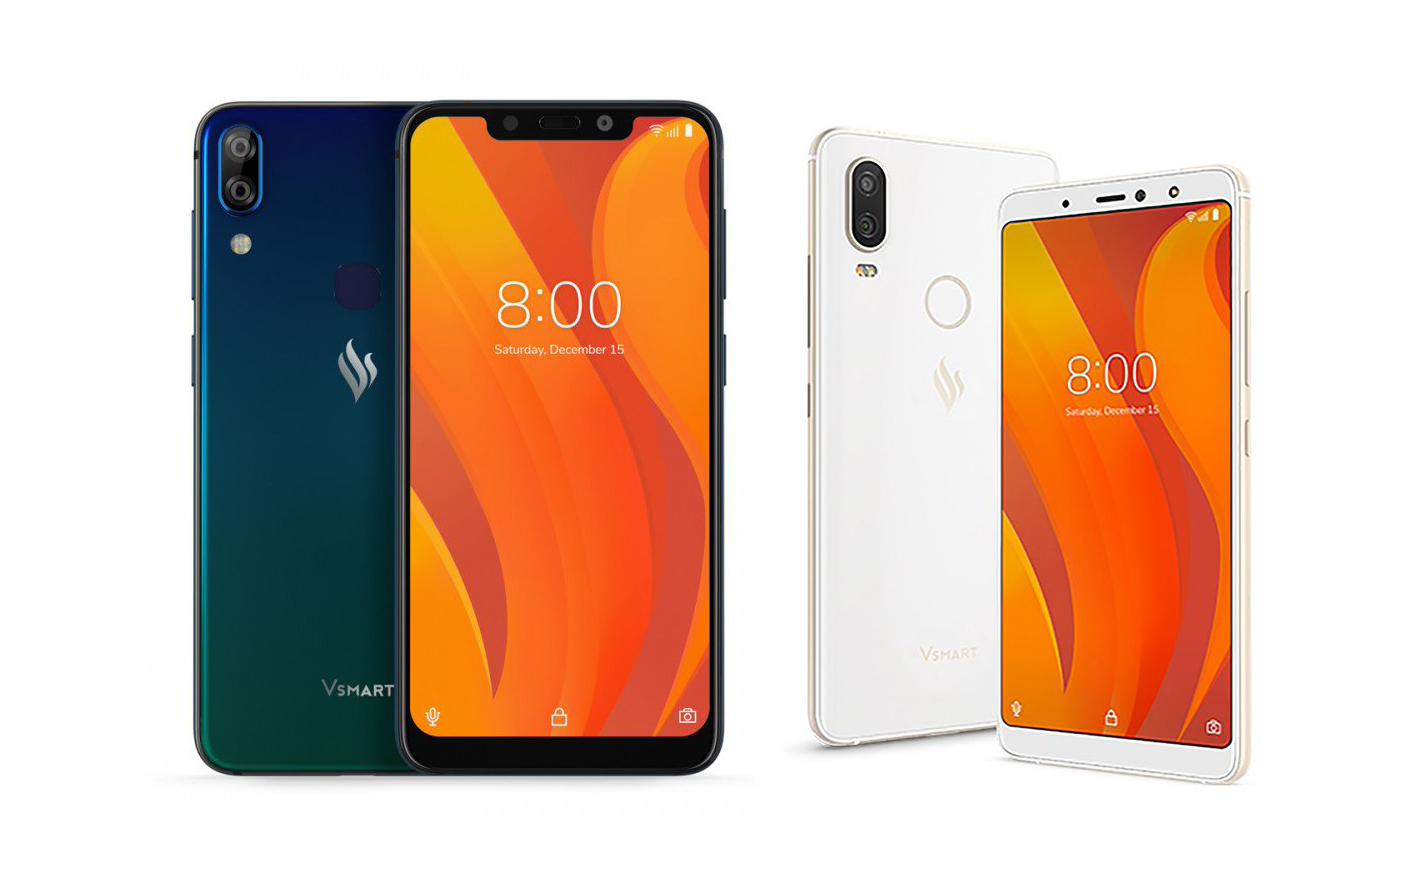 Cấu hình chi tiết 4 chiếc điện thoại Vsmart: Snapdragon 660 / 435, RAM 3-6GB, pin cao nhất 4000mAh